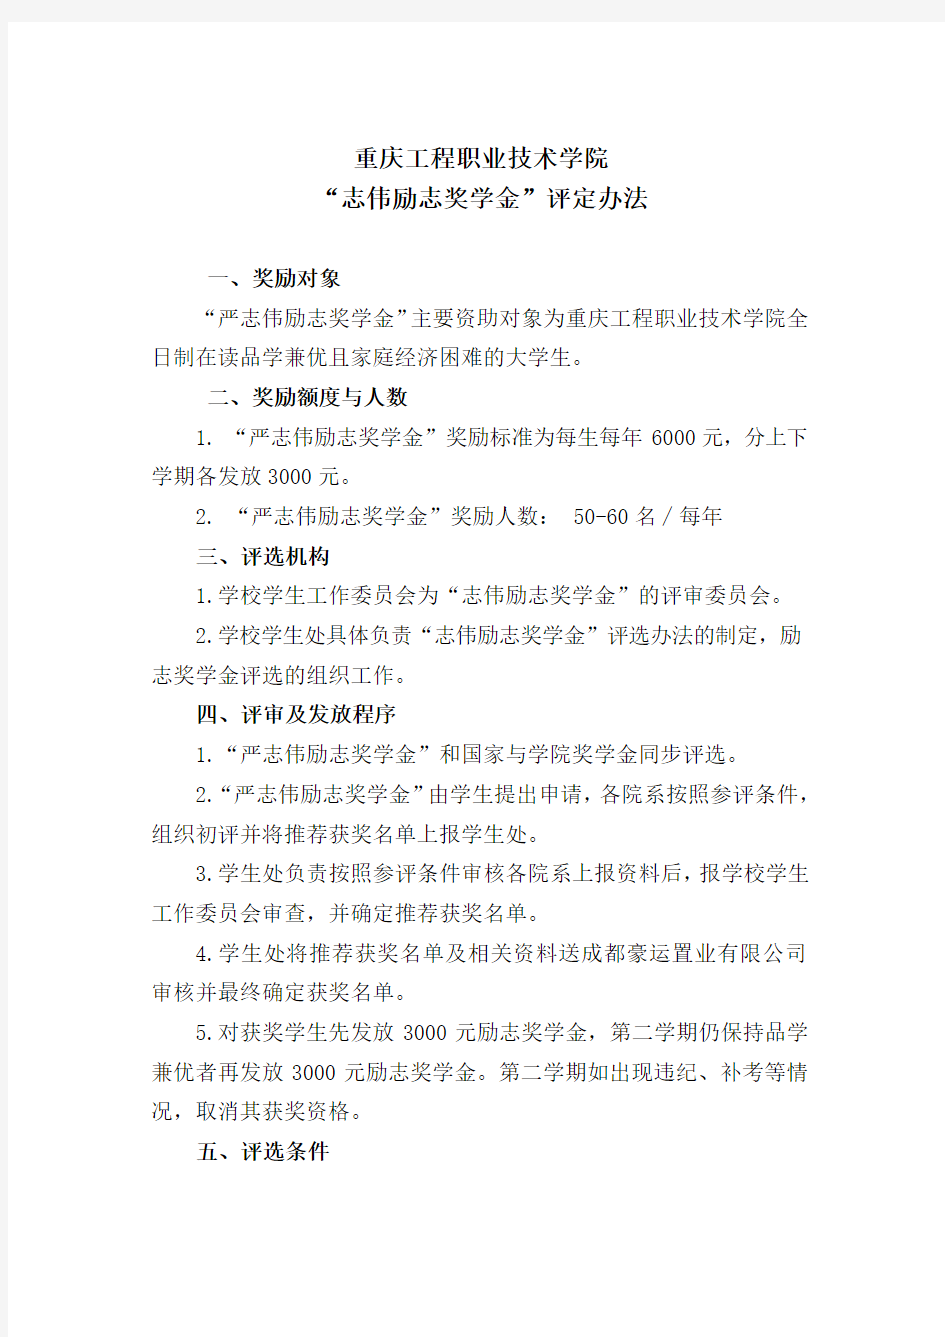 重庆工程职业技术学院“志伟励志奖学金”评定办法